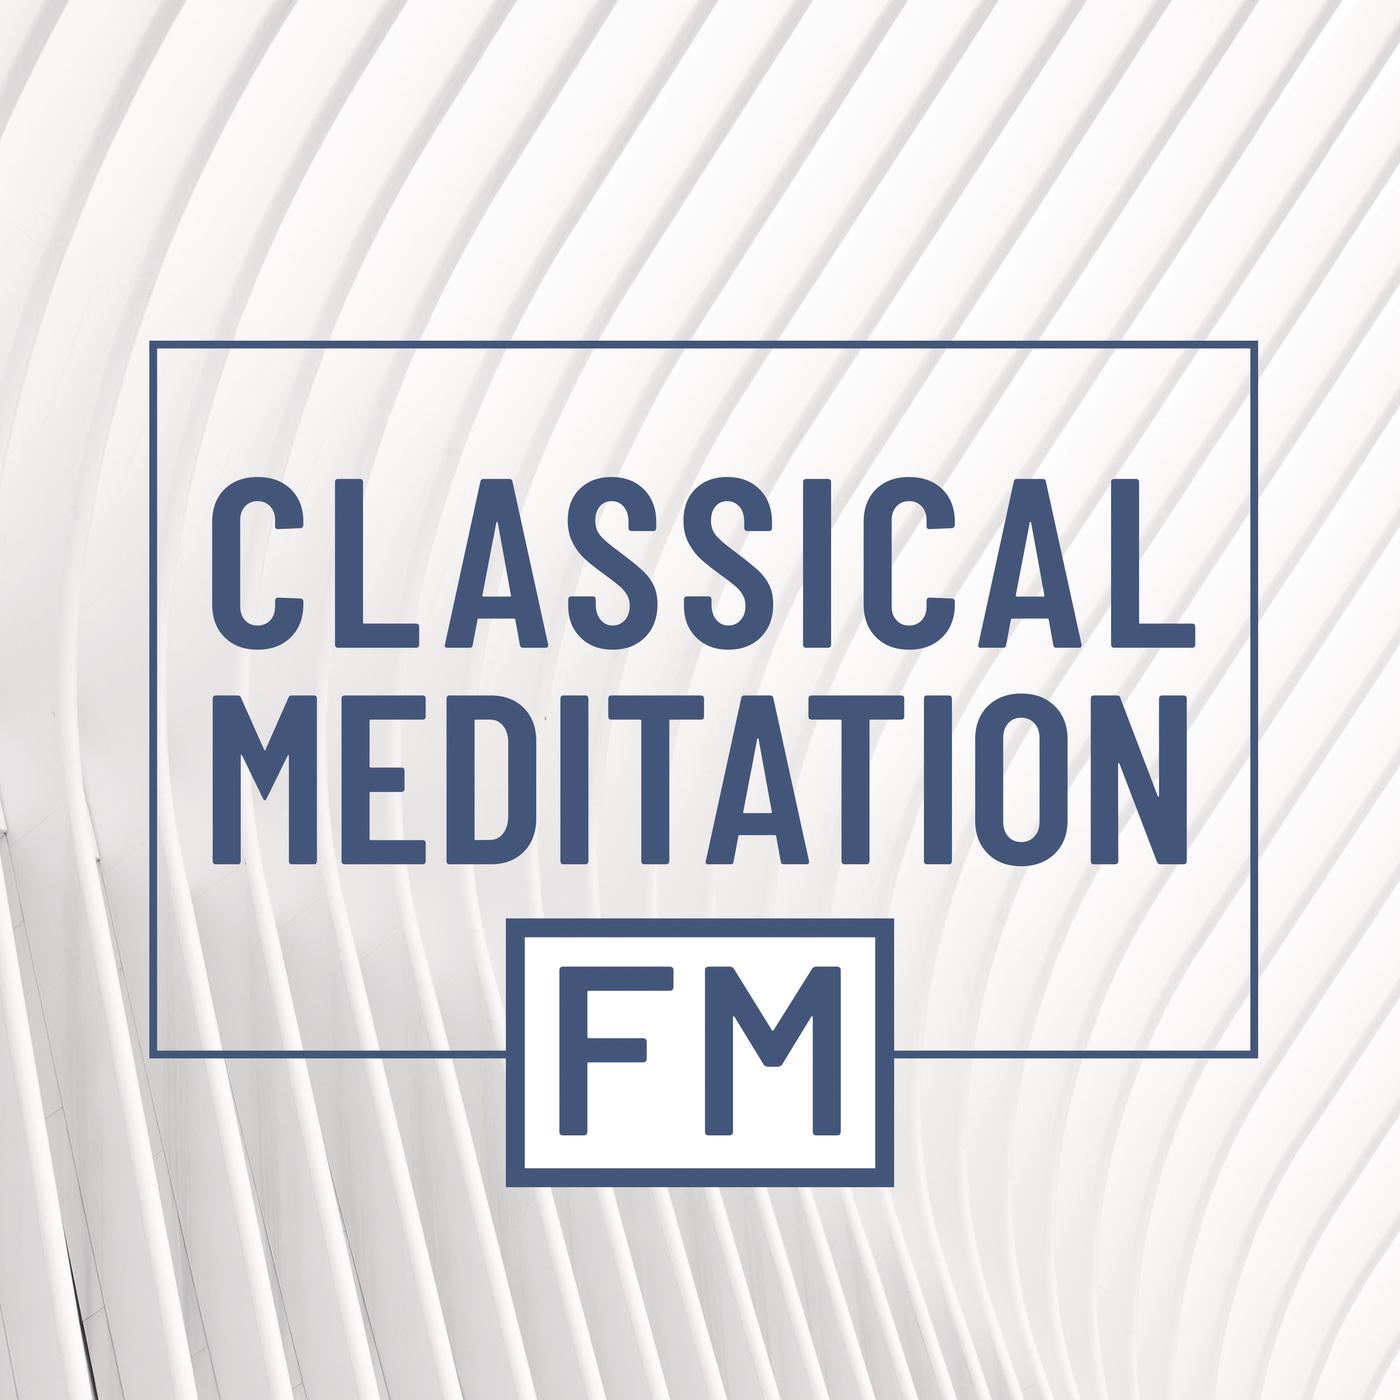 Classical Meditation FM